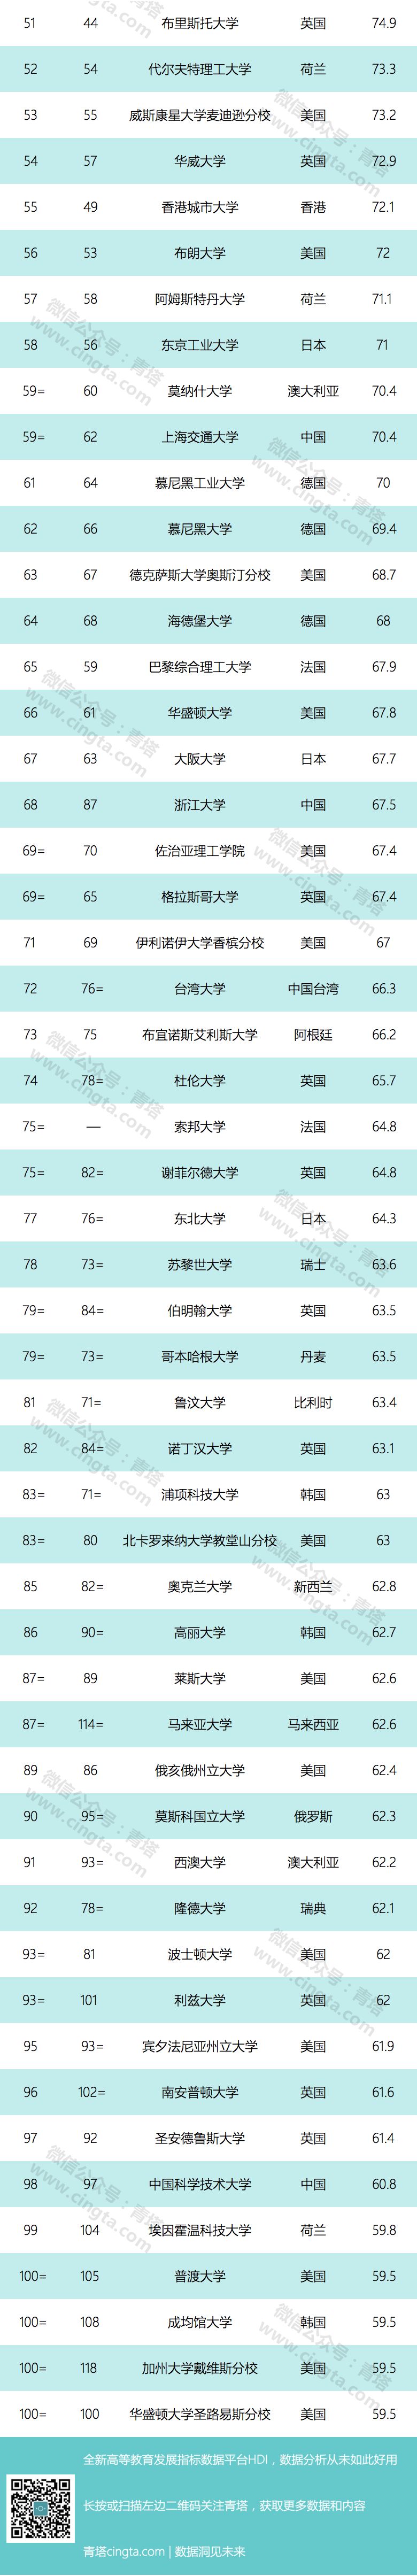 哈工大qs世界大学%e_QS世界大学排名出炉,中国高校排名中,武大第8、哈工